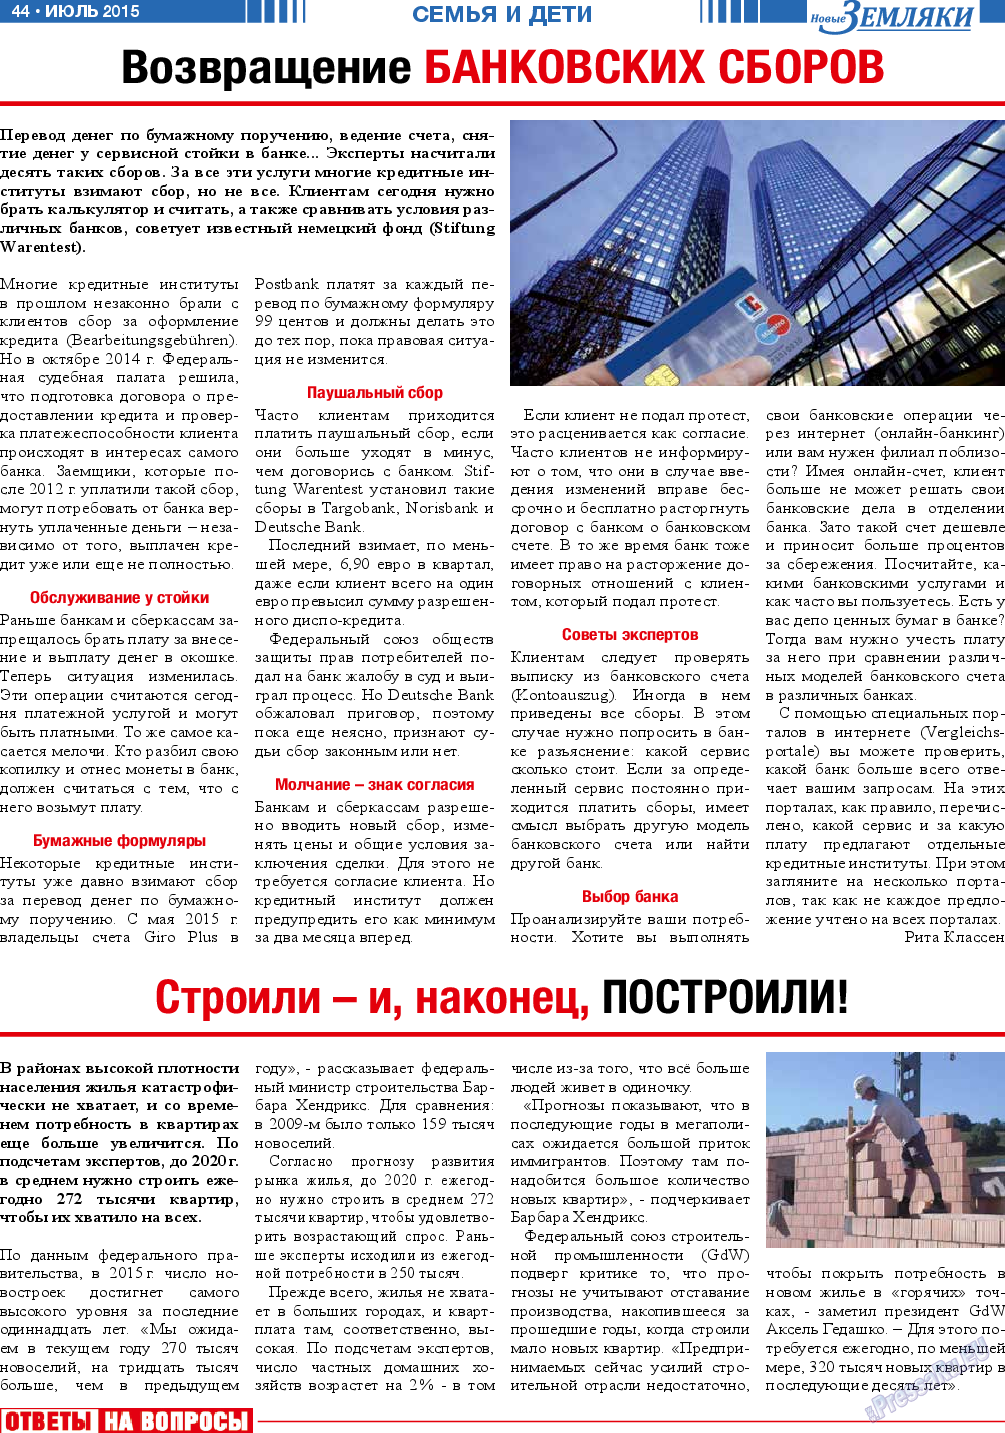 Новые Земляки, газета. 2015 №7 стр.44